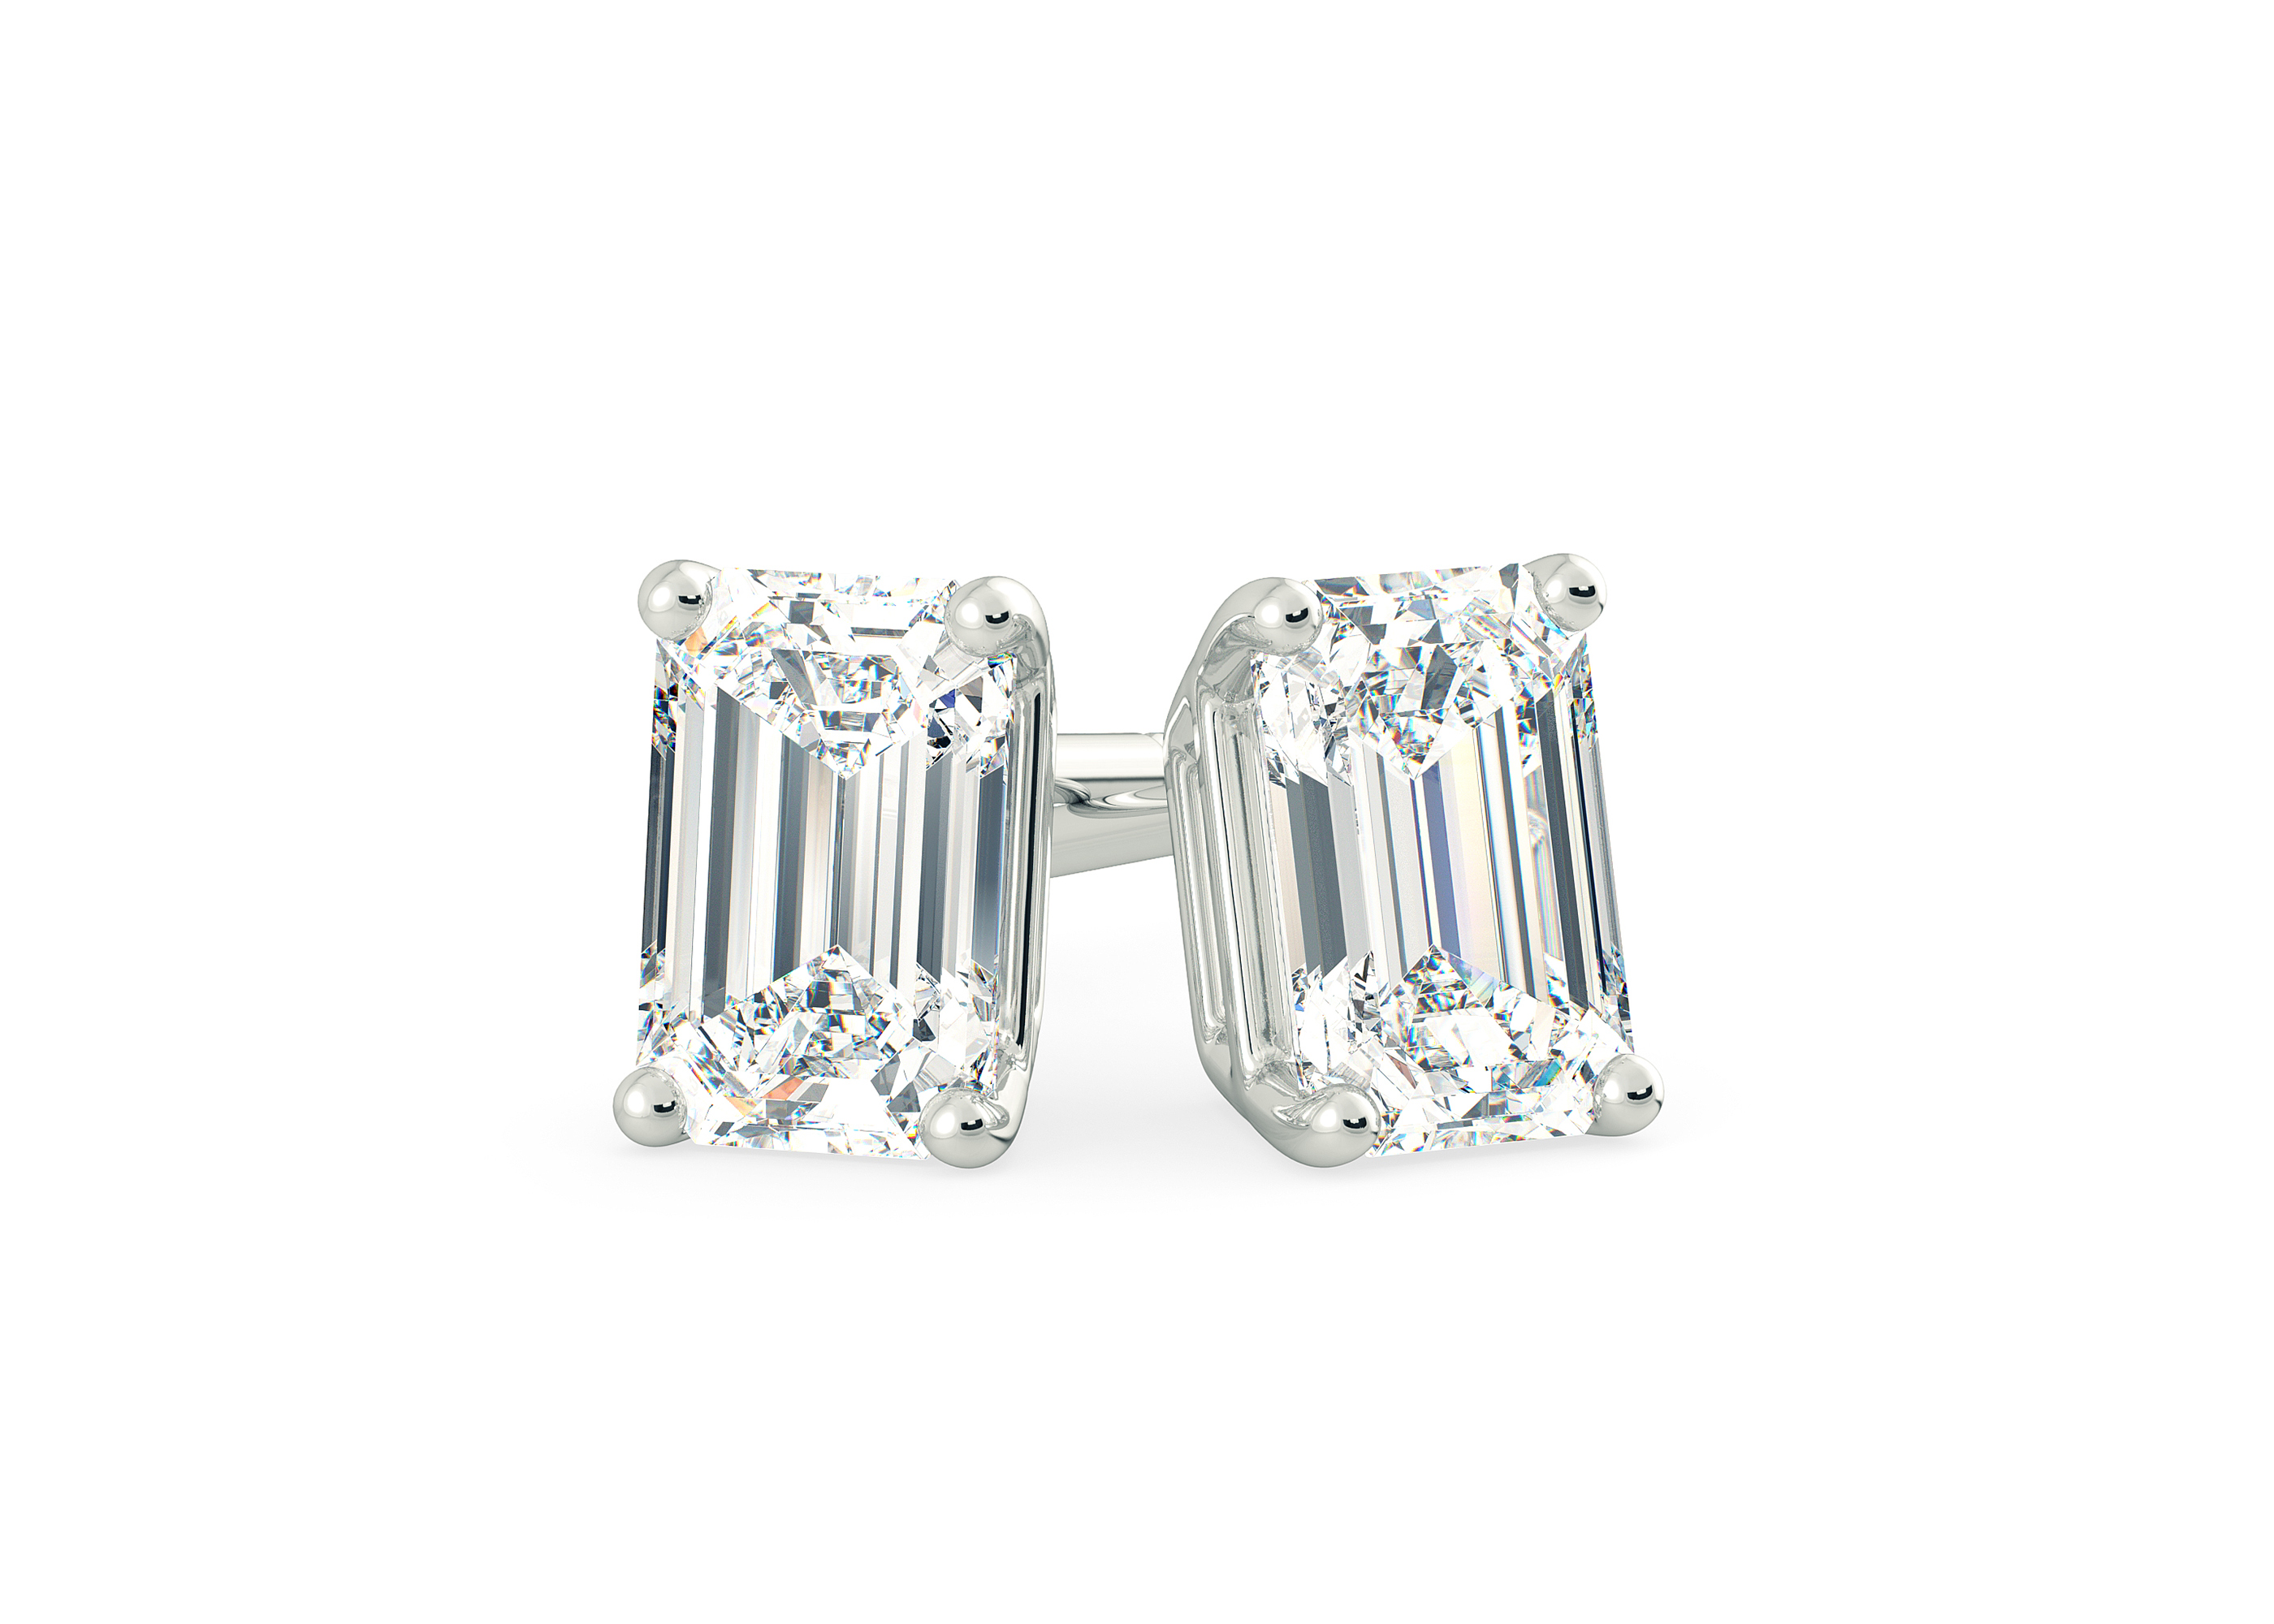 Ettore Emerald Diamond Stud Earrings in 18K White Gold with Butterfly Backs